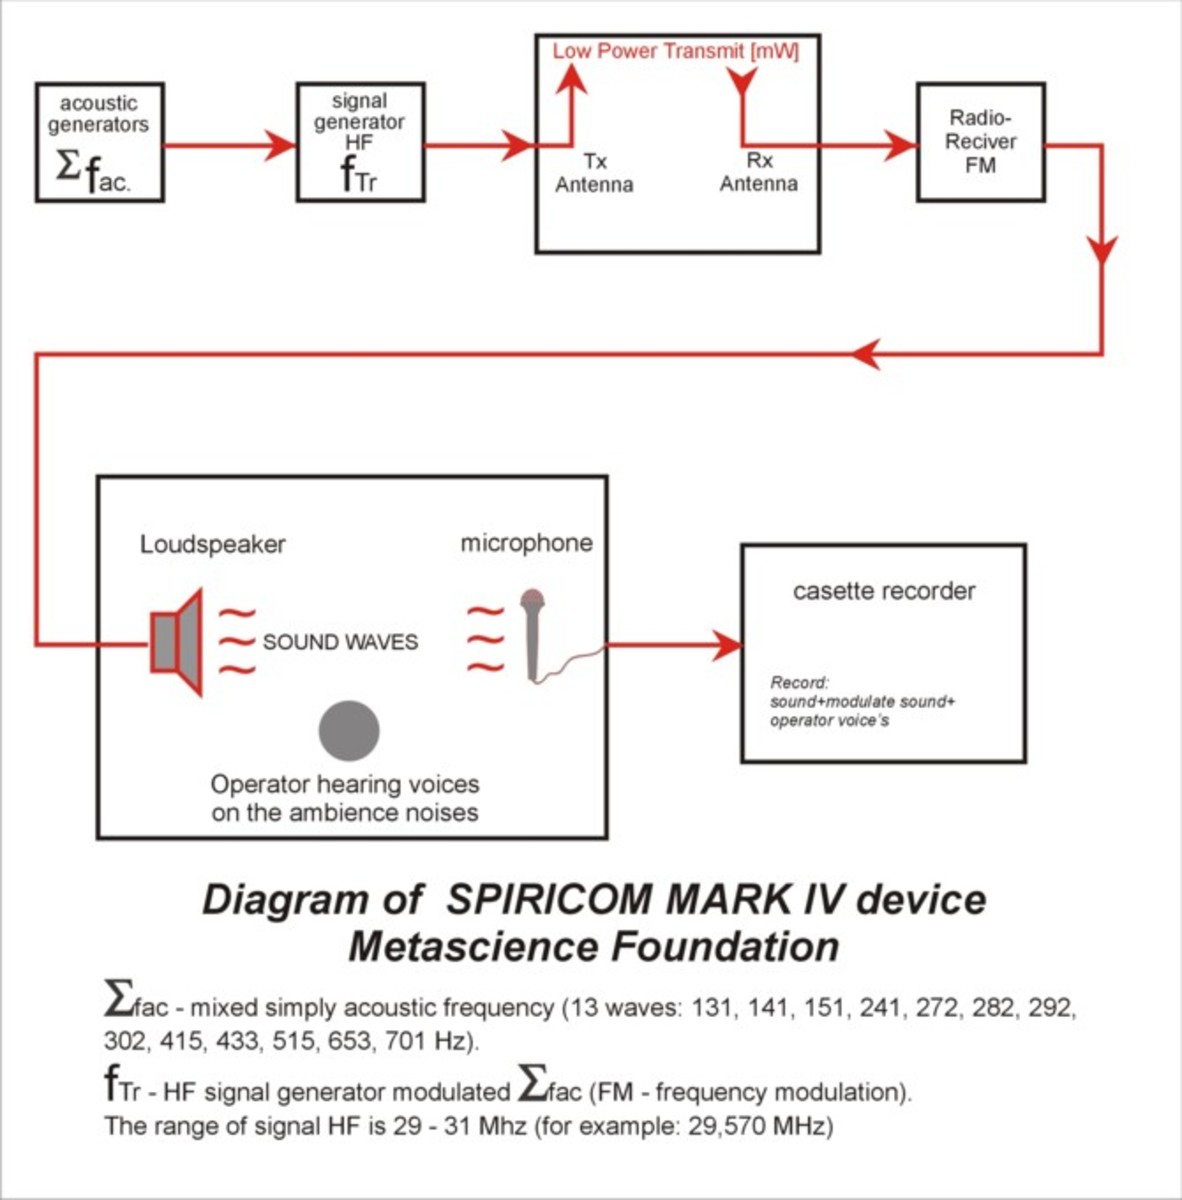 Diagram of Spiricom Mark IV device